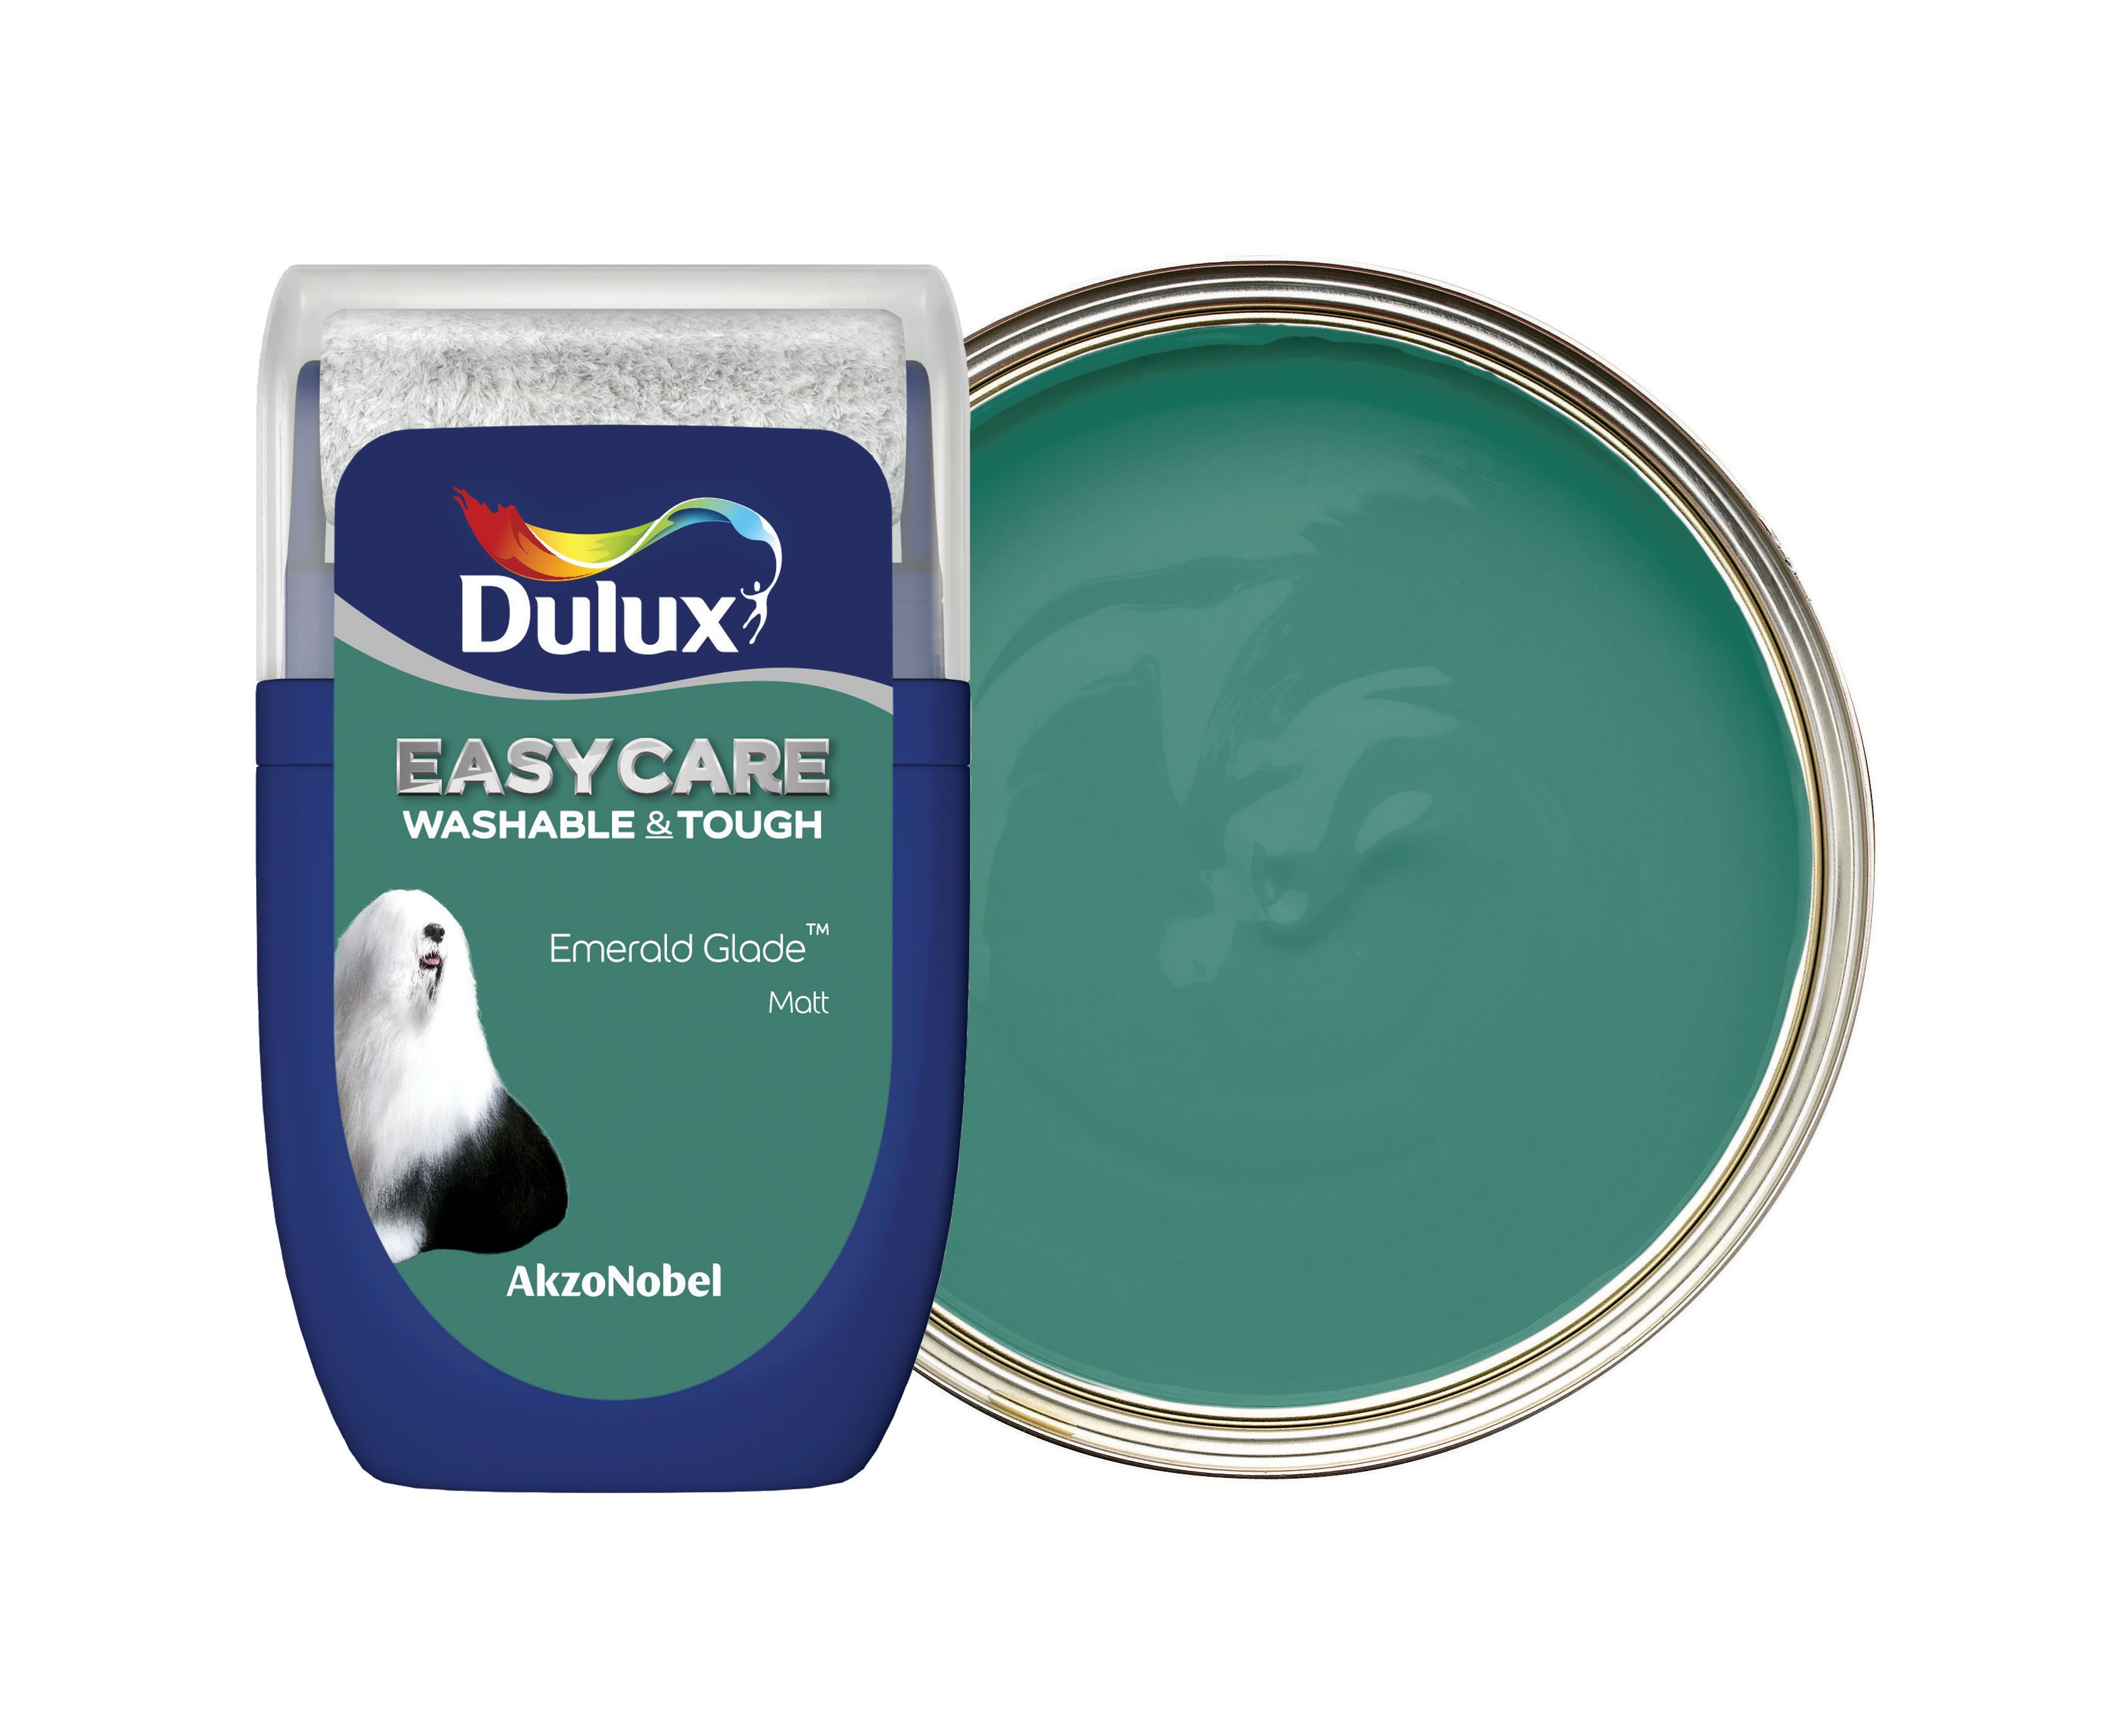 Dulux Easycare Washable & Tough Paint Tester Pot - Emerald Glade - 30ml